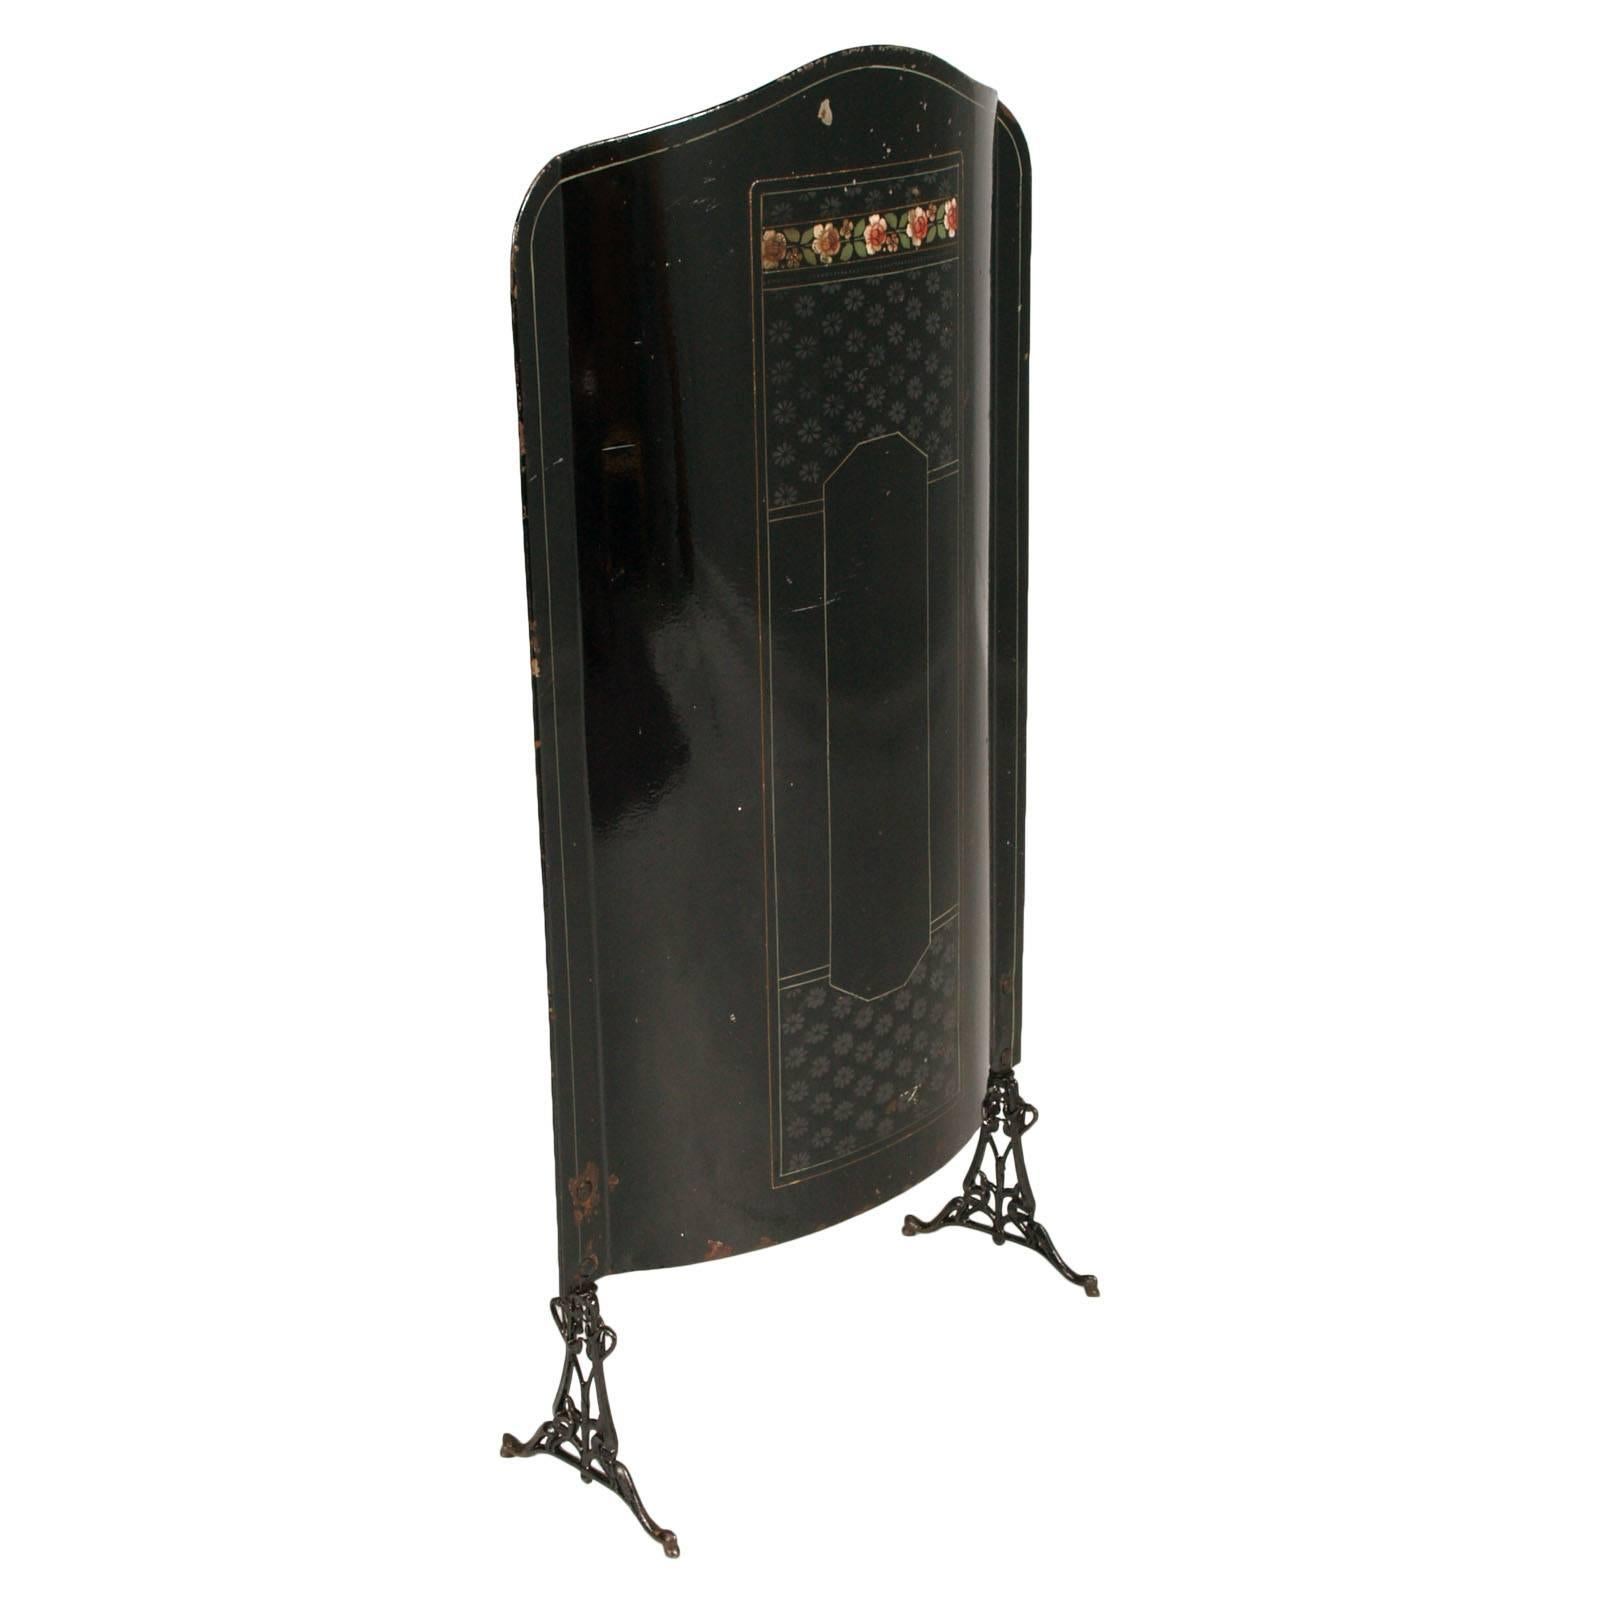 Jugendstil-Feuerschirm aus schwarz emailliertem Stahl mit Perlmuttdekor. Beine aus emailliertem Gusseisen.

Maße cm: H 121, B 62, T 23.